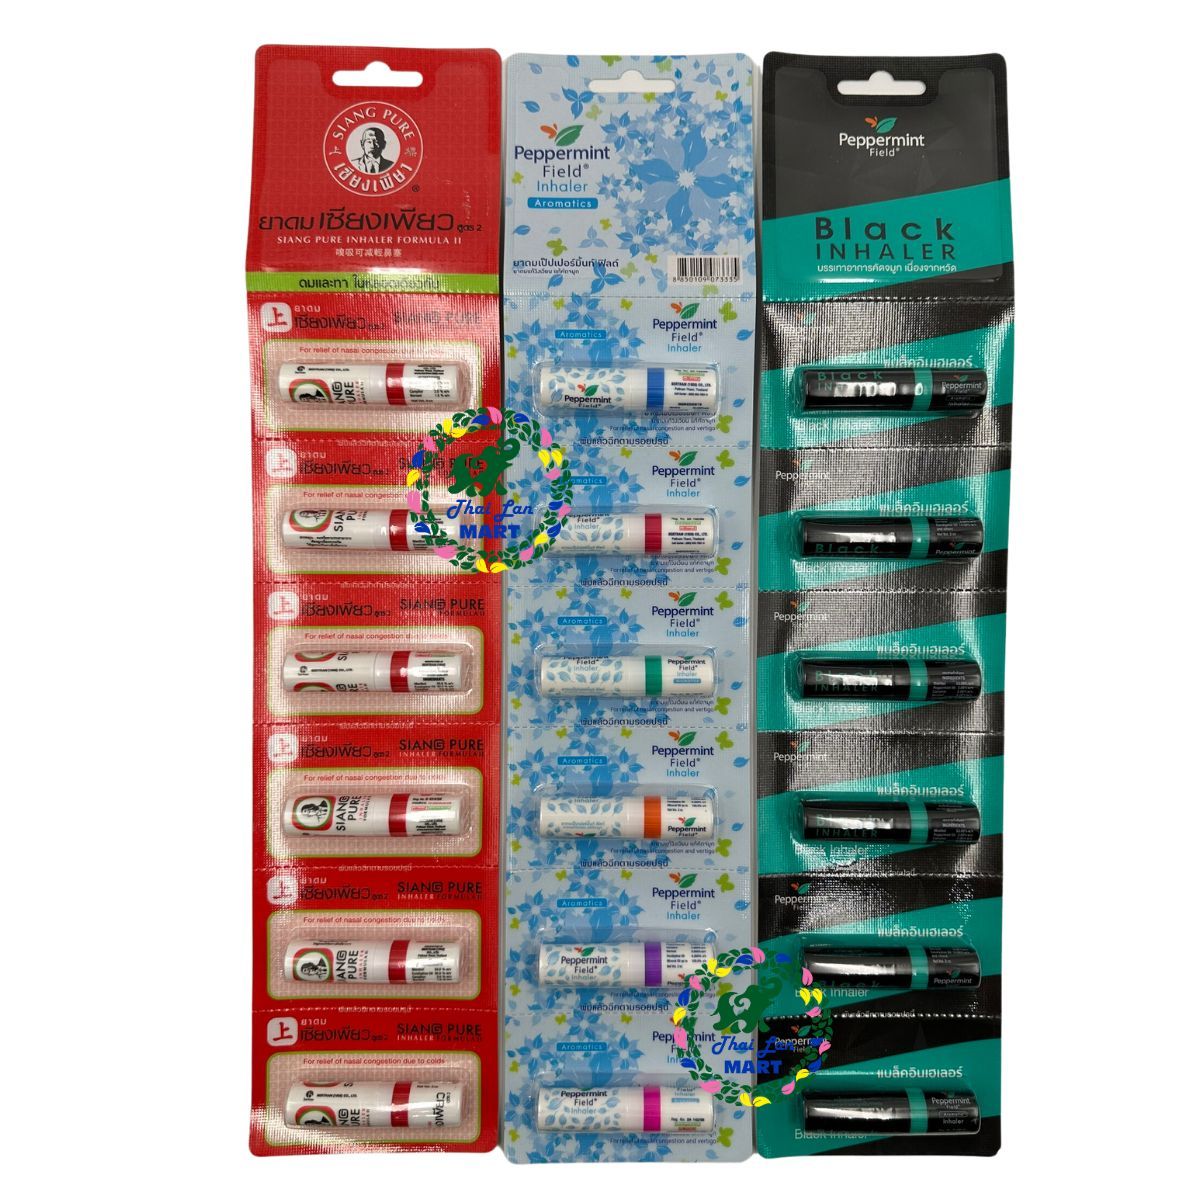  6 ống hít thông mũi siang pure peppermint inhaler hàng nội địa chính hãng thái lan 